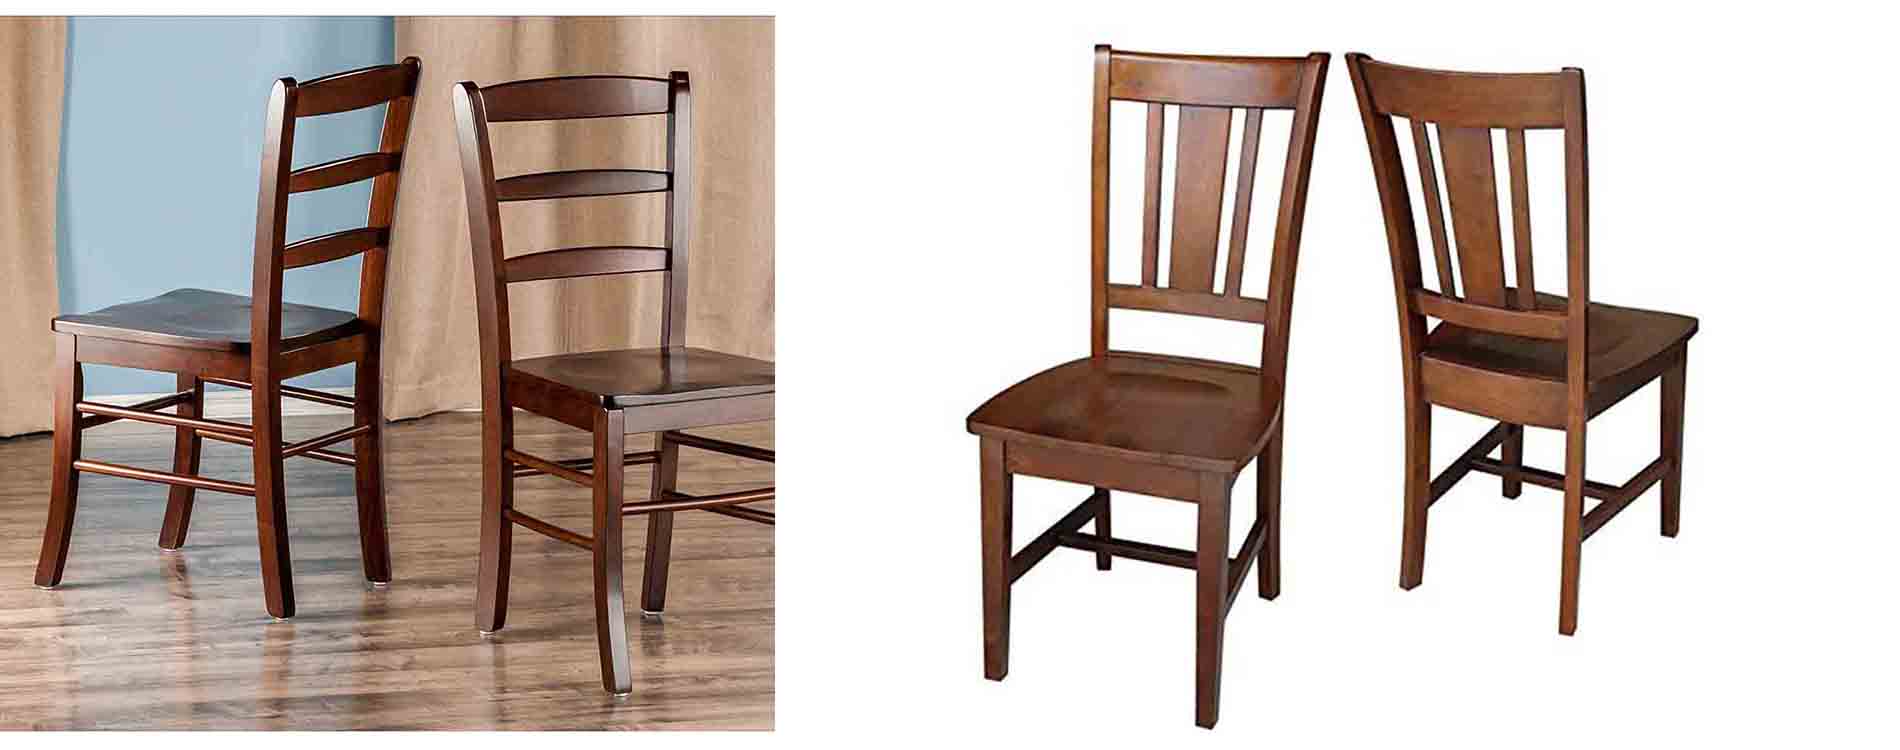 Rhinoland Chairs